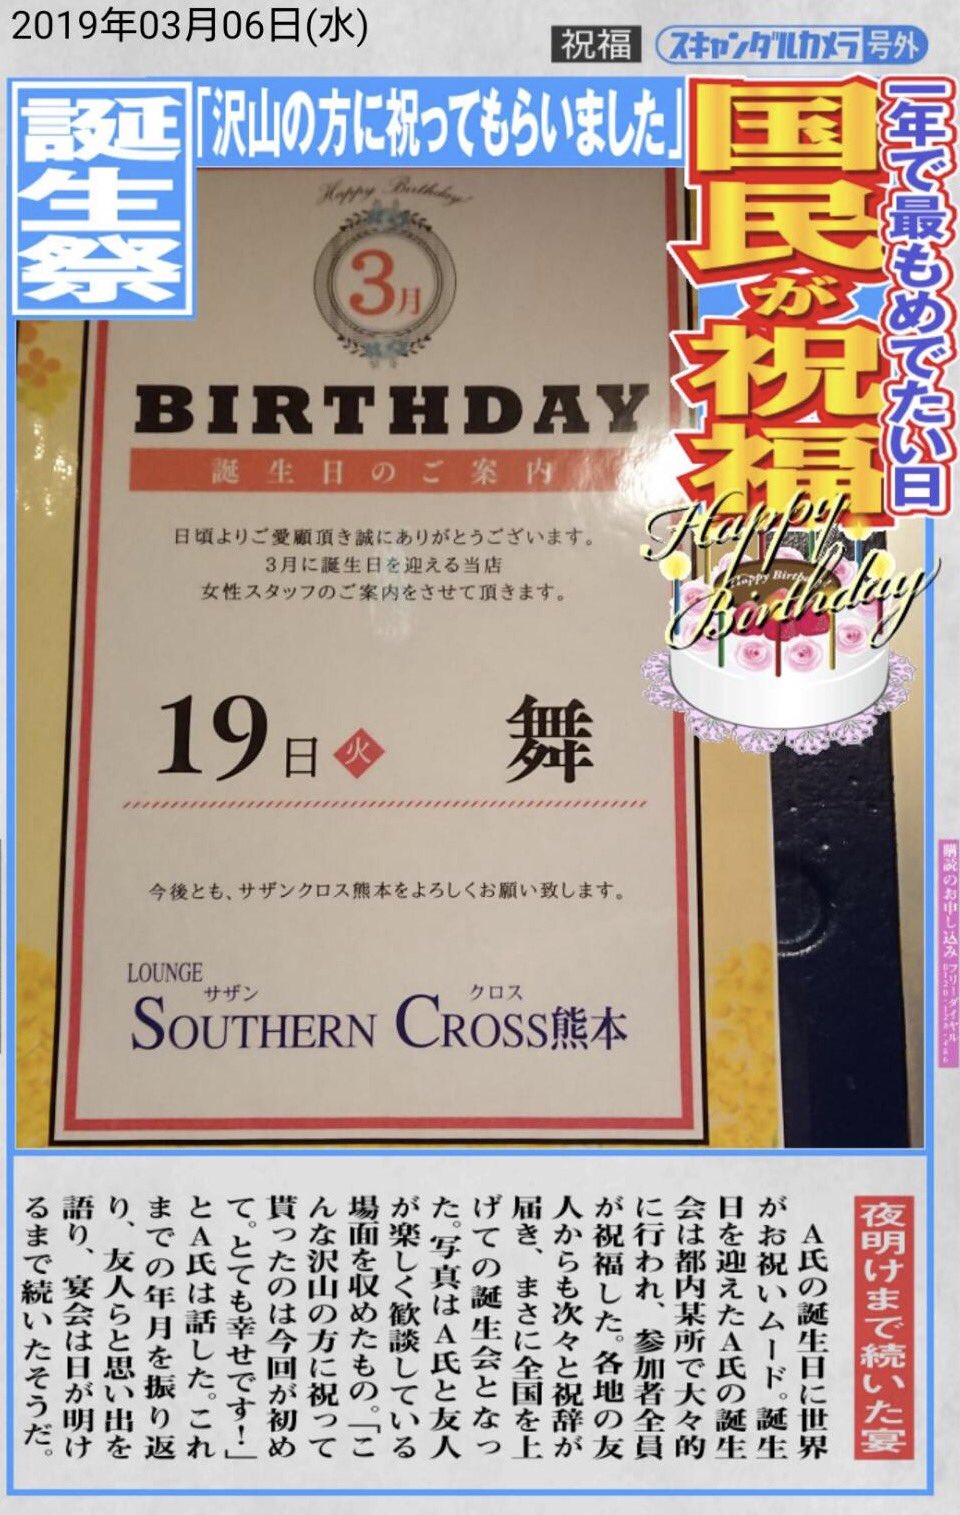 総合レジャーサービスグループ 熊本地区サザンクロスです 3月19日は舞さんのhappybirthday 皆様のご来店心よりお待ちしております ラウンジサザンクロス熊本 誕生日おめでとう